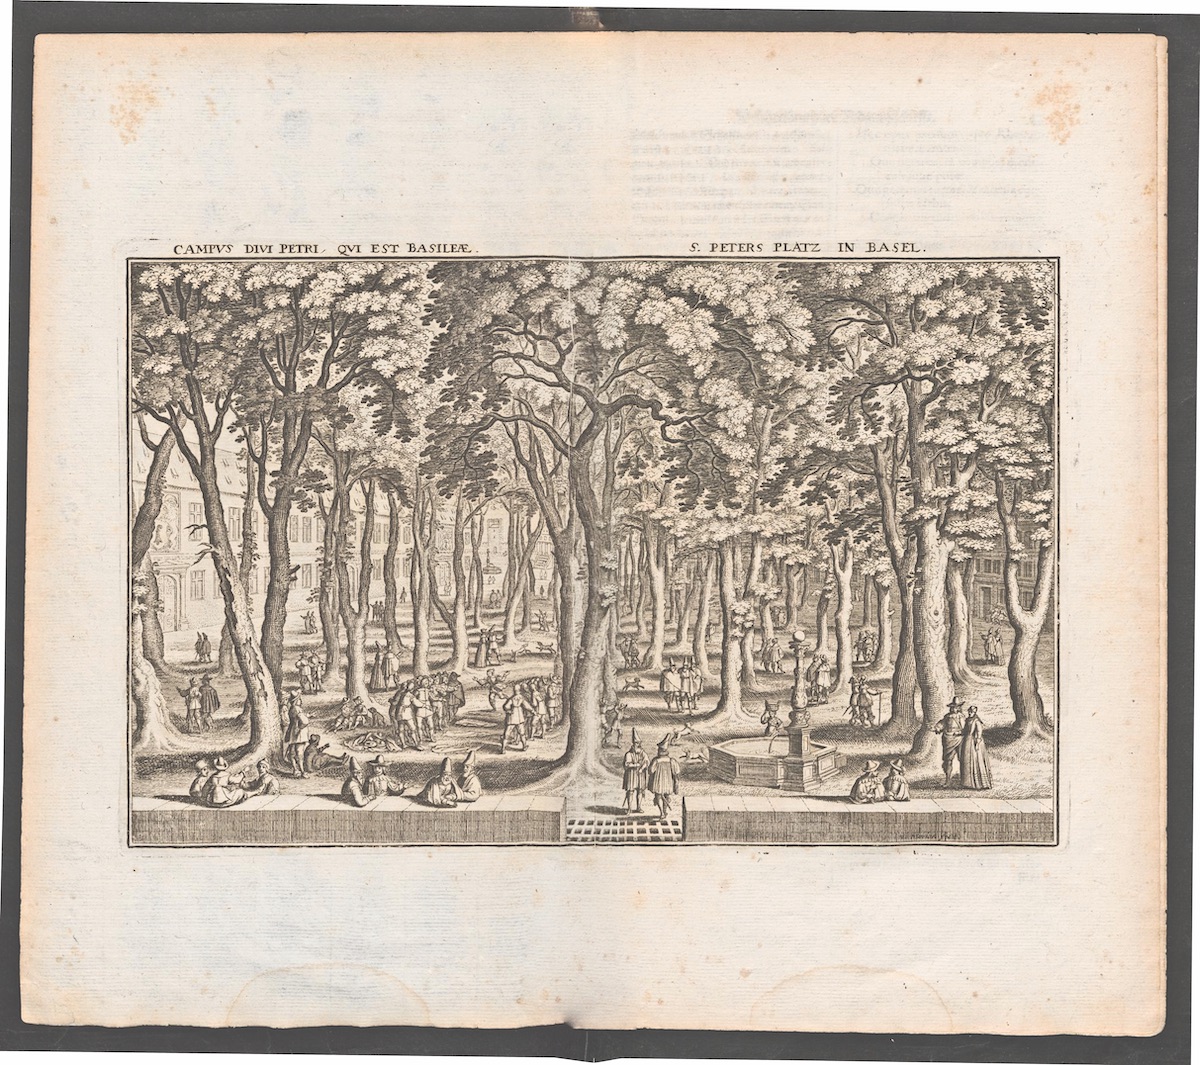 Unter den Bäumen des Petersplatz in Basel. Stich von M. Merian, in Topographia Helvetiae, Rhaetiae, et Valesiae, Frankfurt-am-Main, 1654. Sammlunng ETH-Bibliothek, Zürich